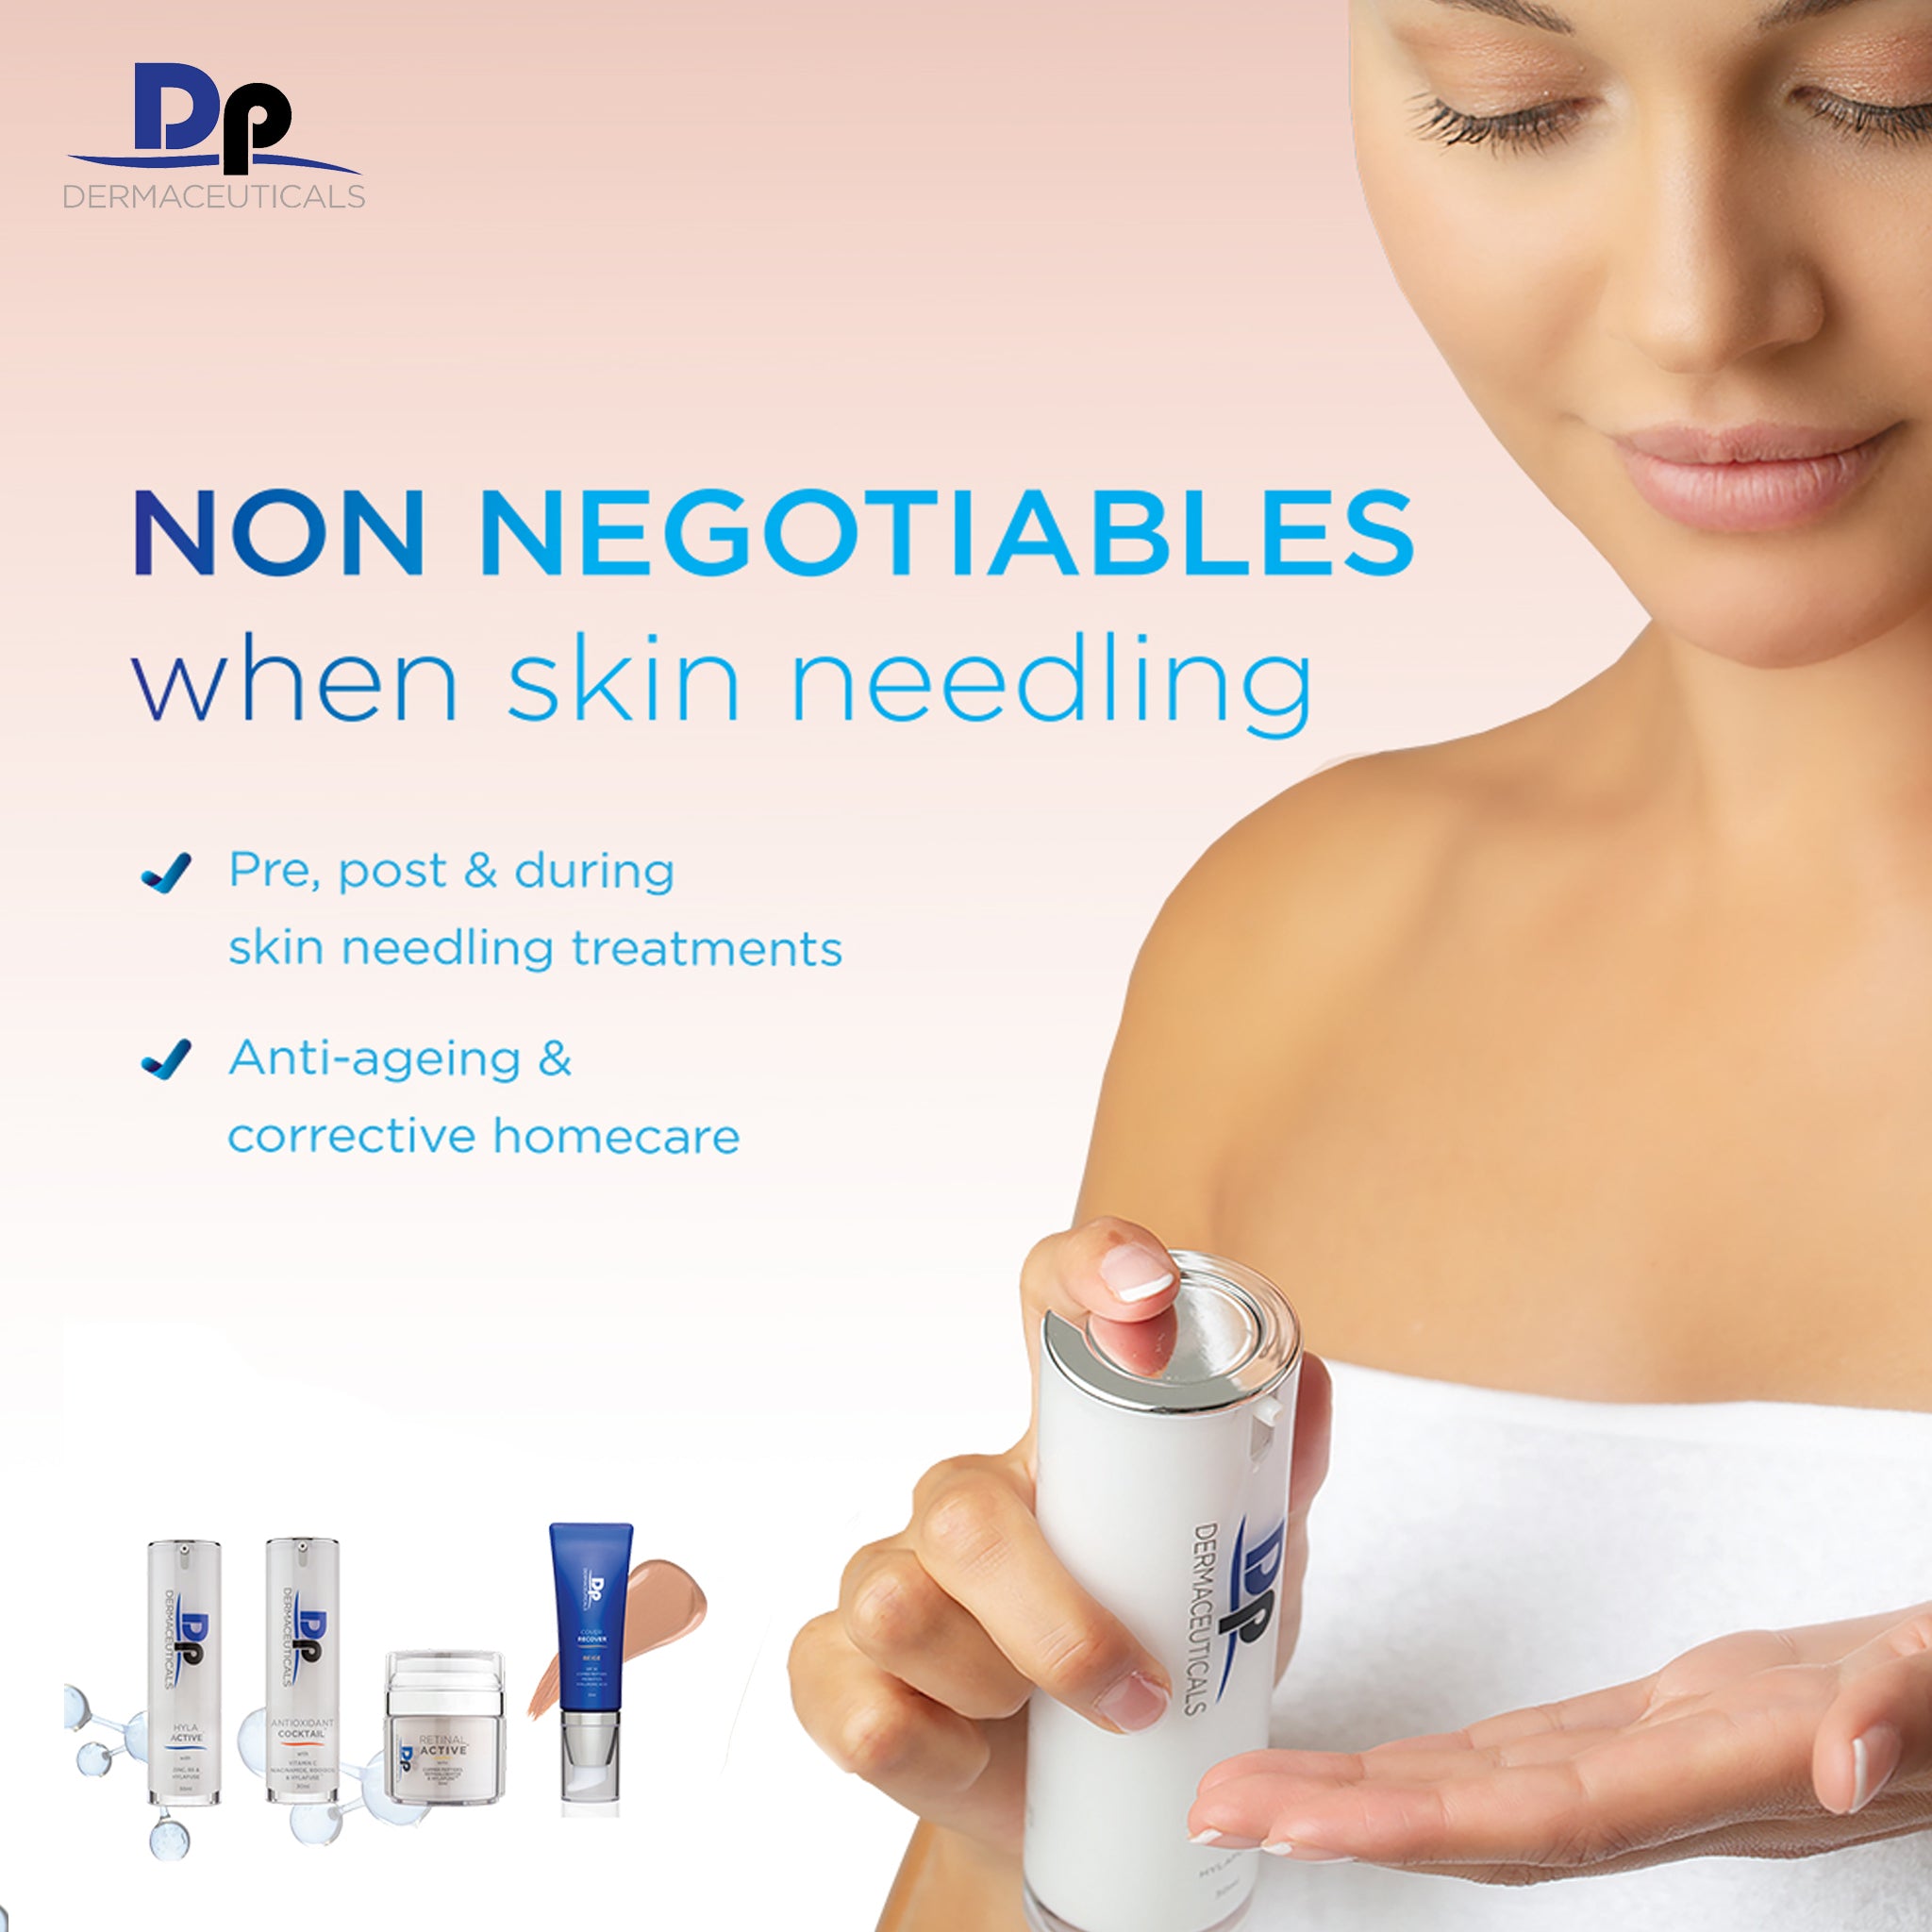 Dermapen 4: All New Global Skin Needling Treatment (in clinic)